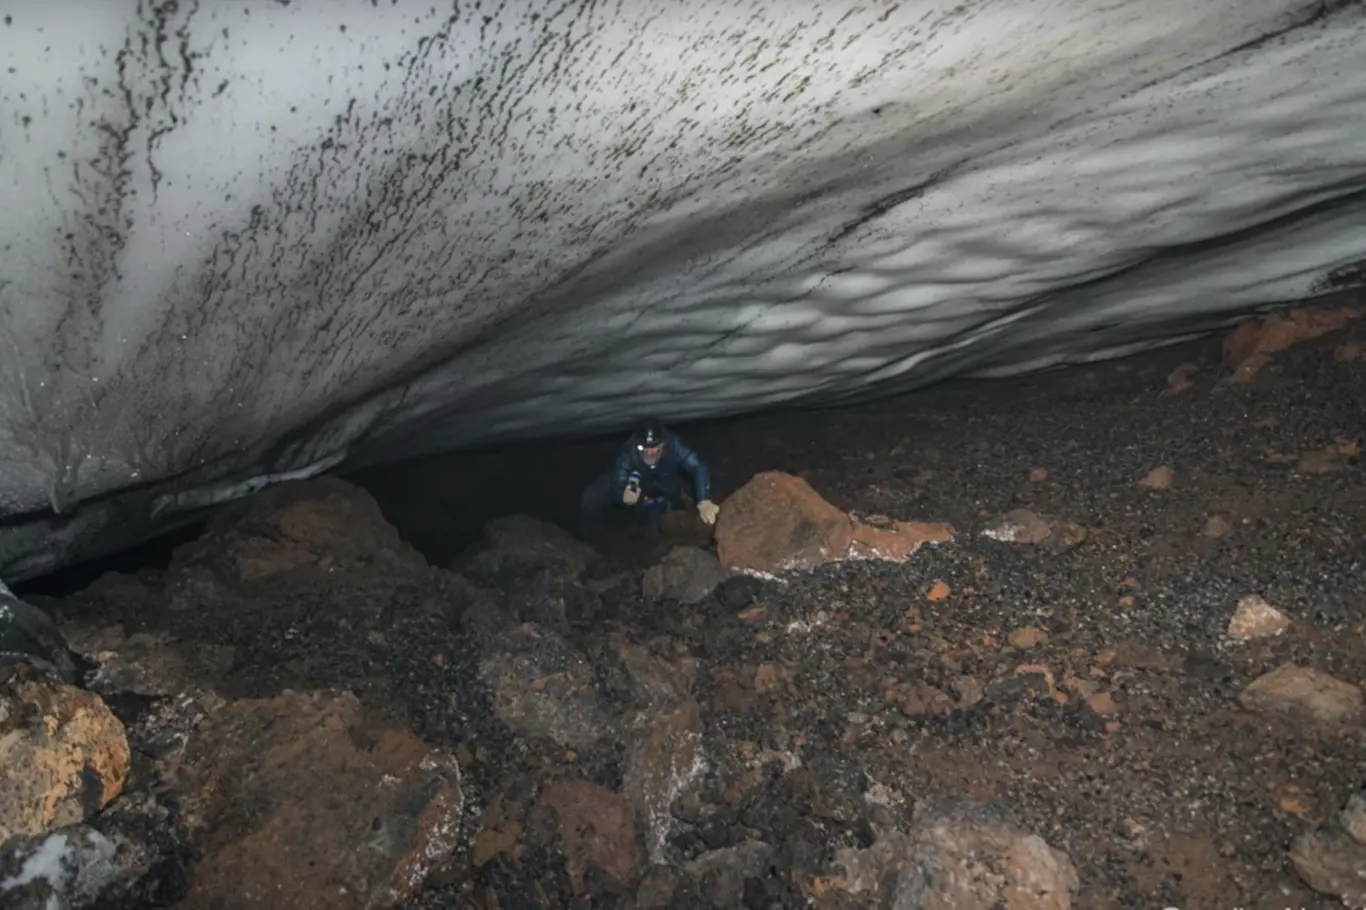 Jeskyně se nacházejí pod druhou nejvyšší aktivní sopkou v Antarktidě a nejjižněji položeným aktivním vulkánem na Zemi Mount Erebus. 